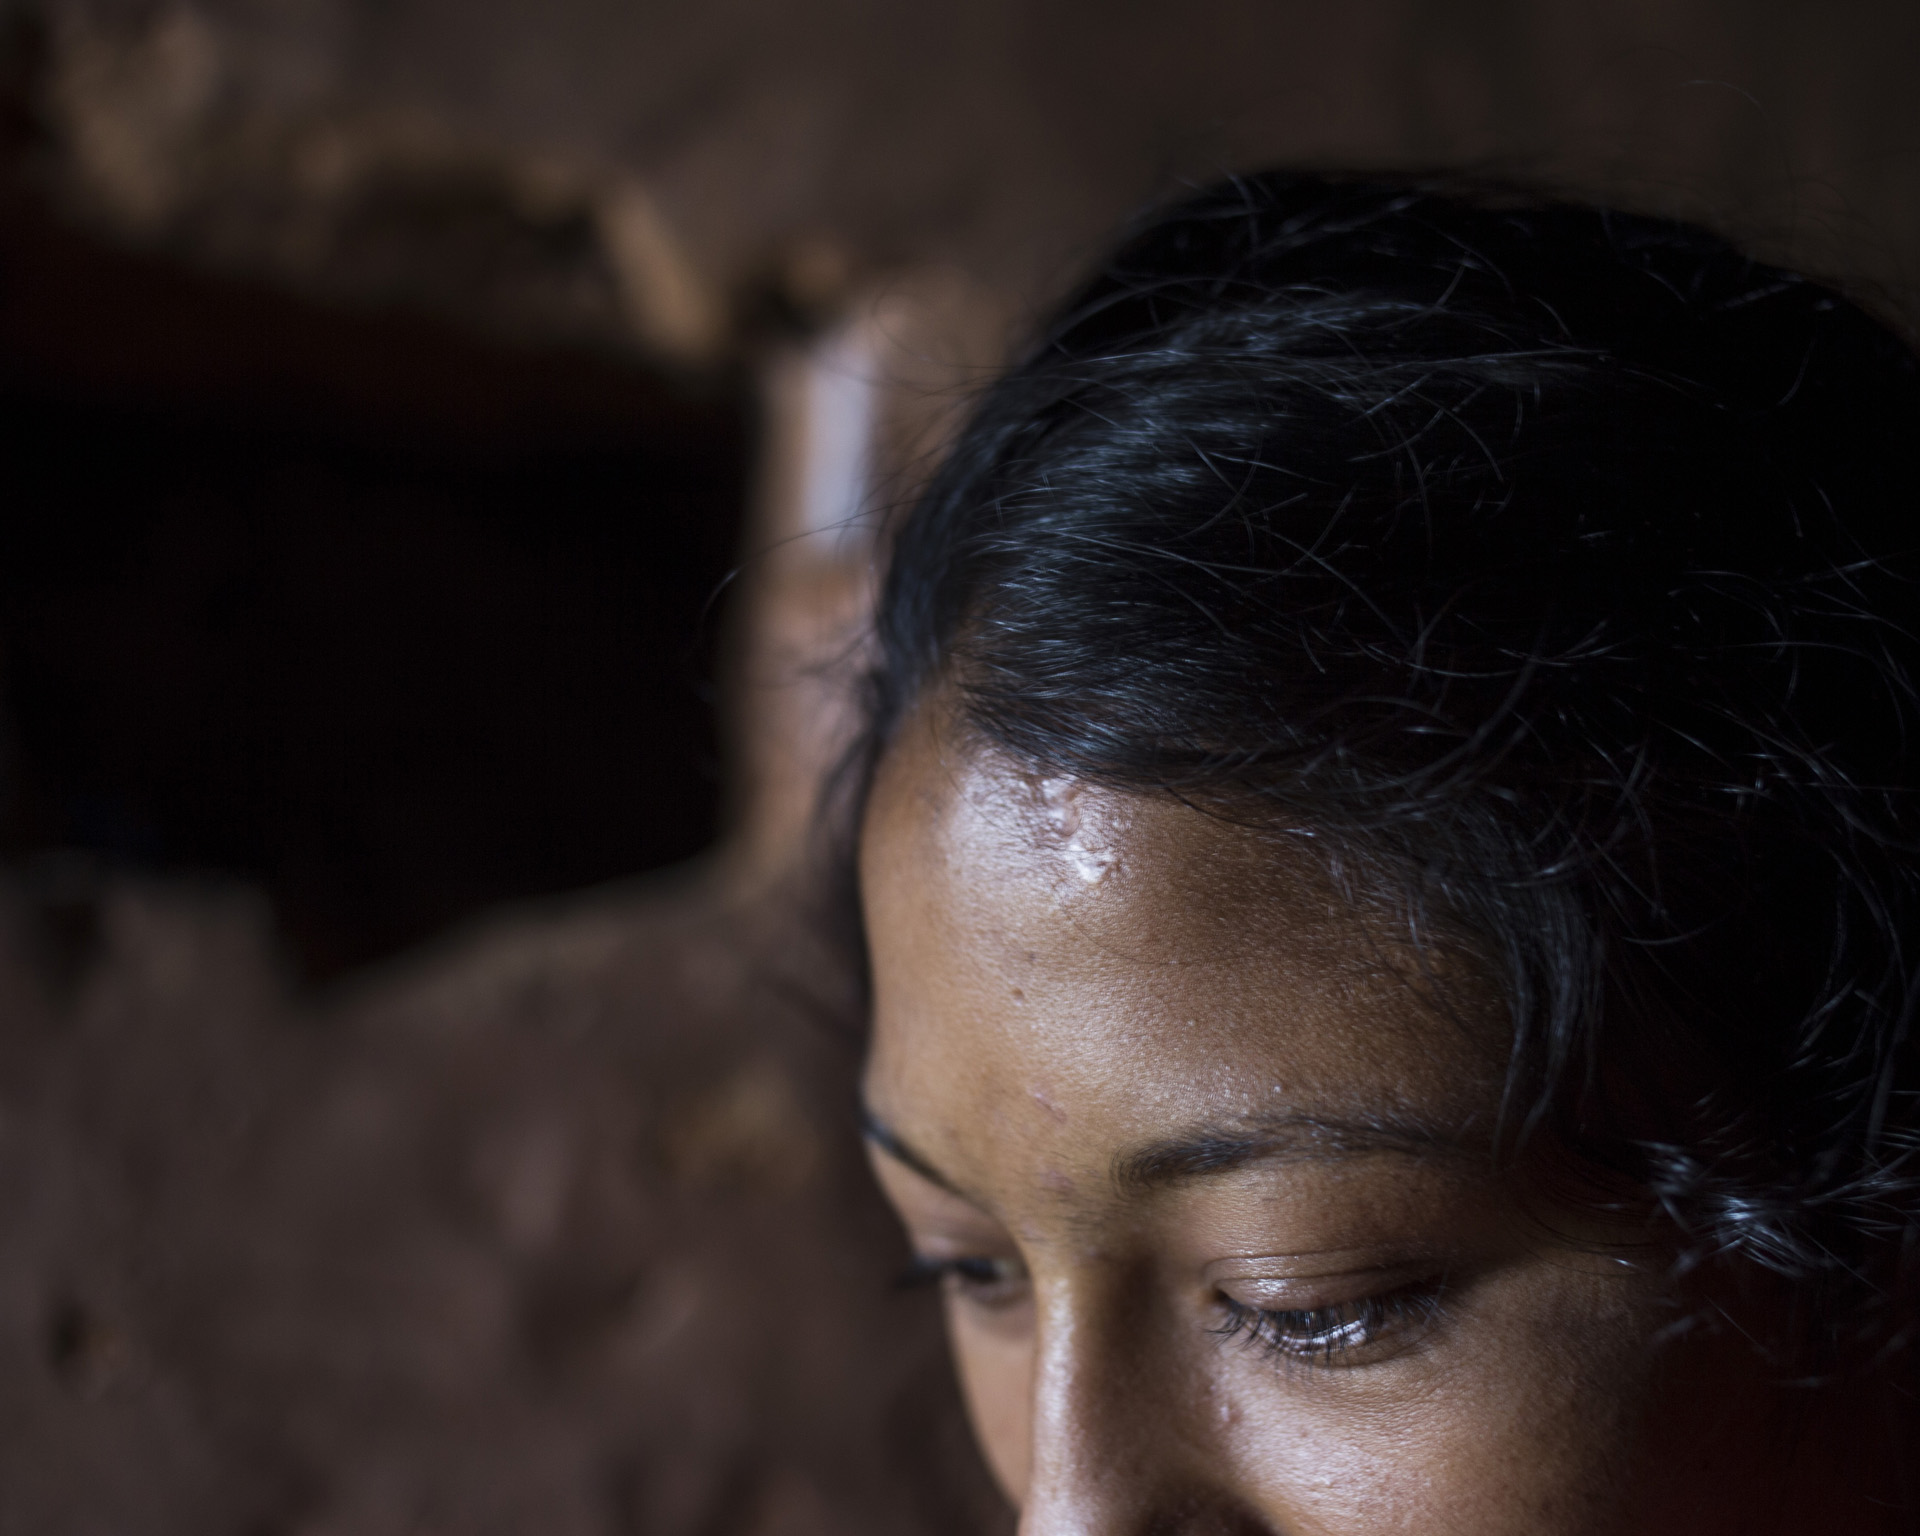 How women navigate menstruation taboos in Nepal